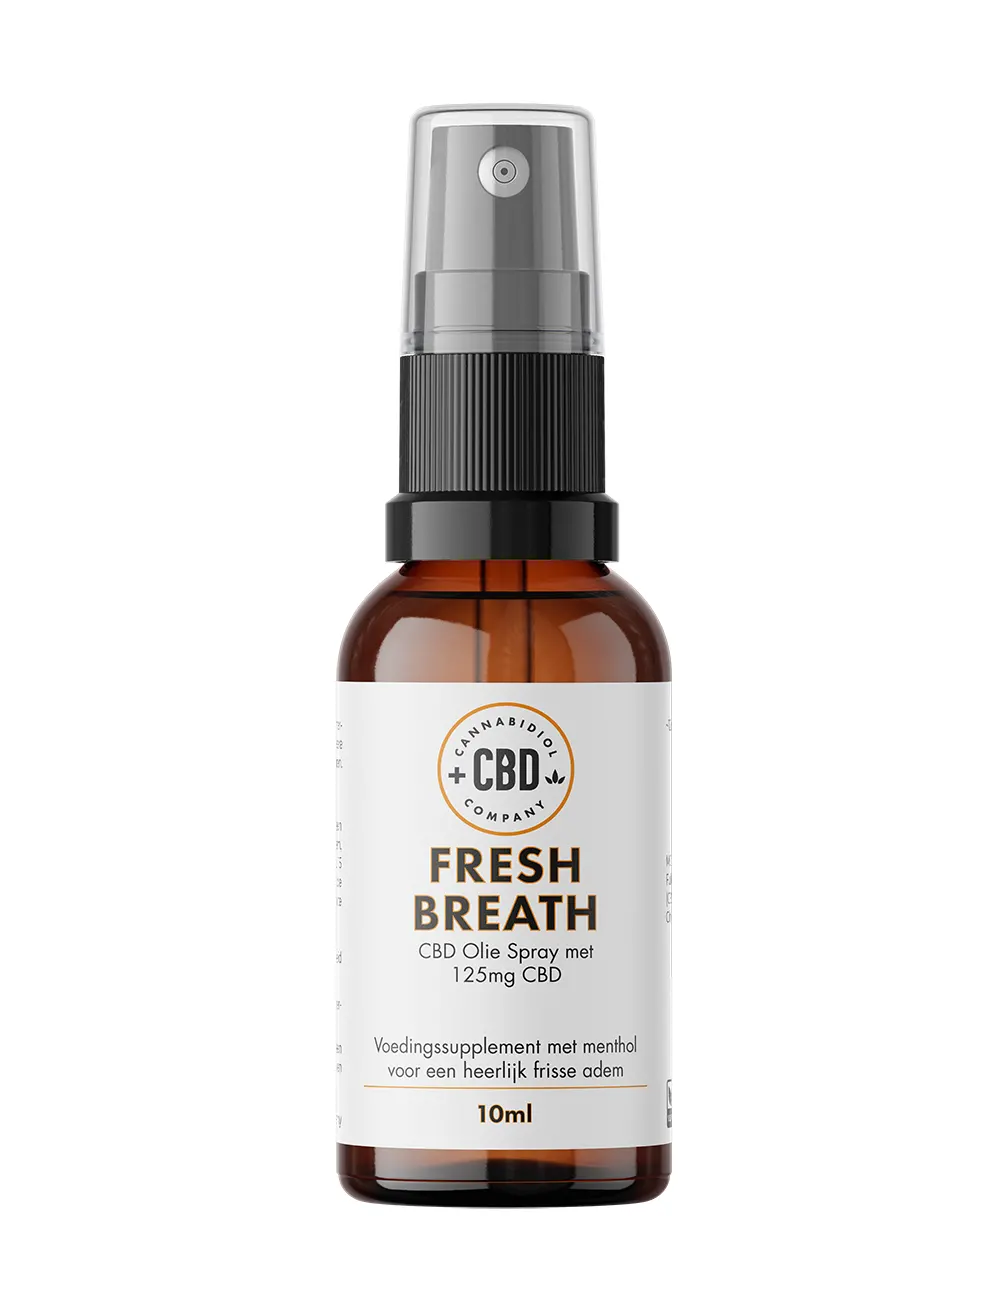 Fresh Breath CBD Spray, cbd supplement voor een frisse adem